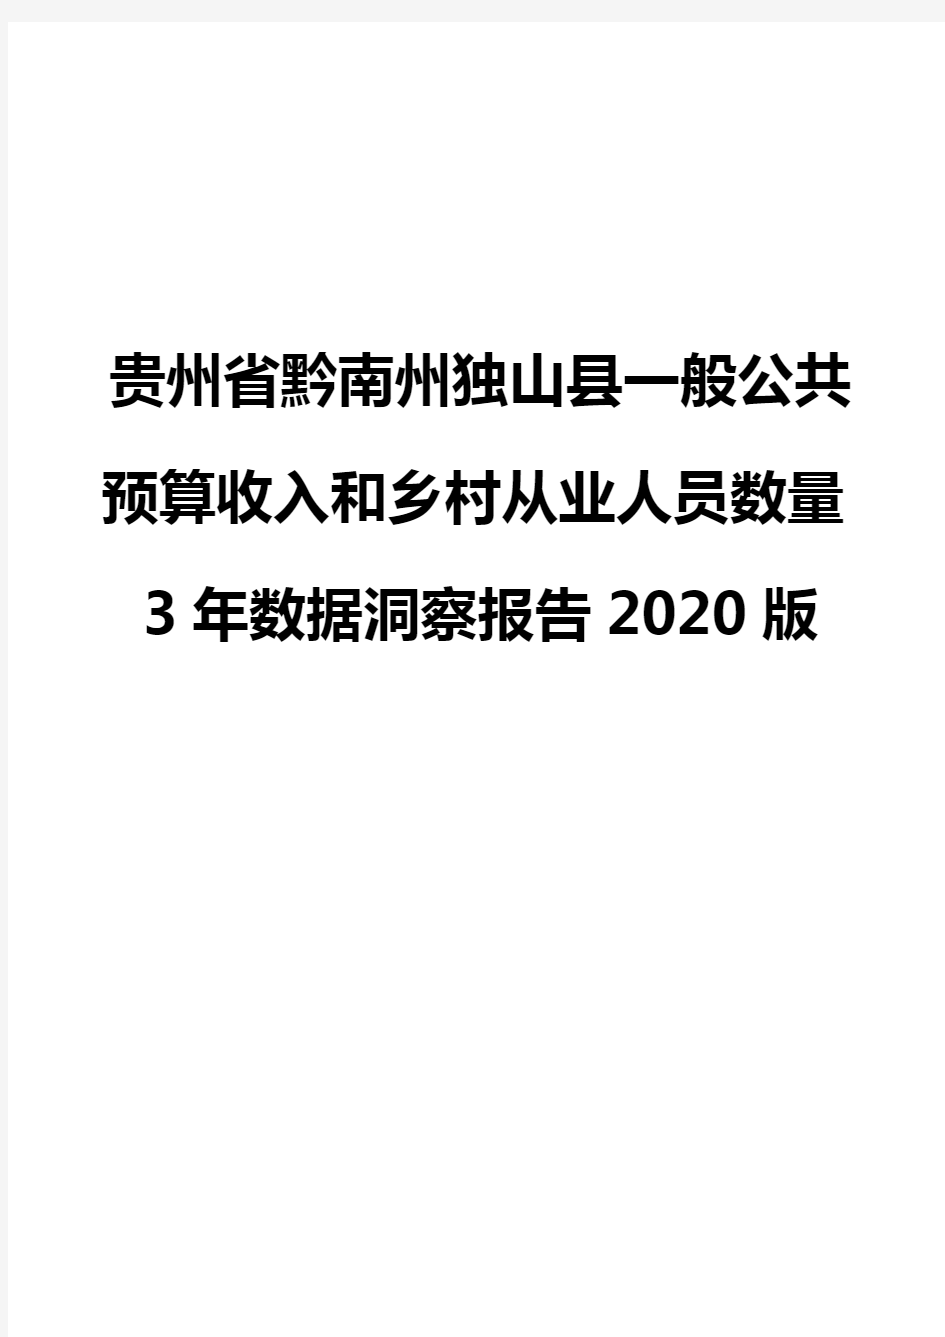 贵州省黔南州独山县一般公共预算收入和乡村从业人员数量3年数据洞察报告2020版